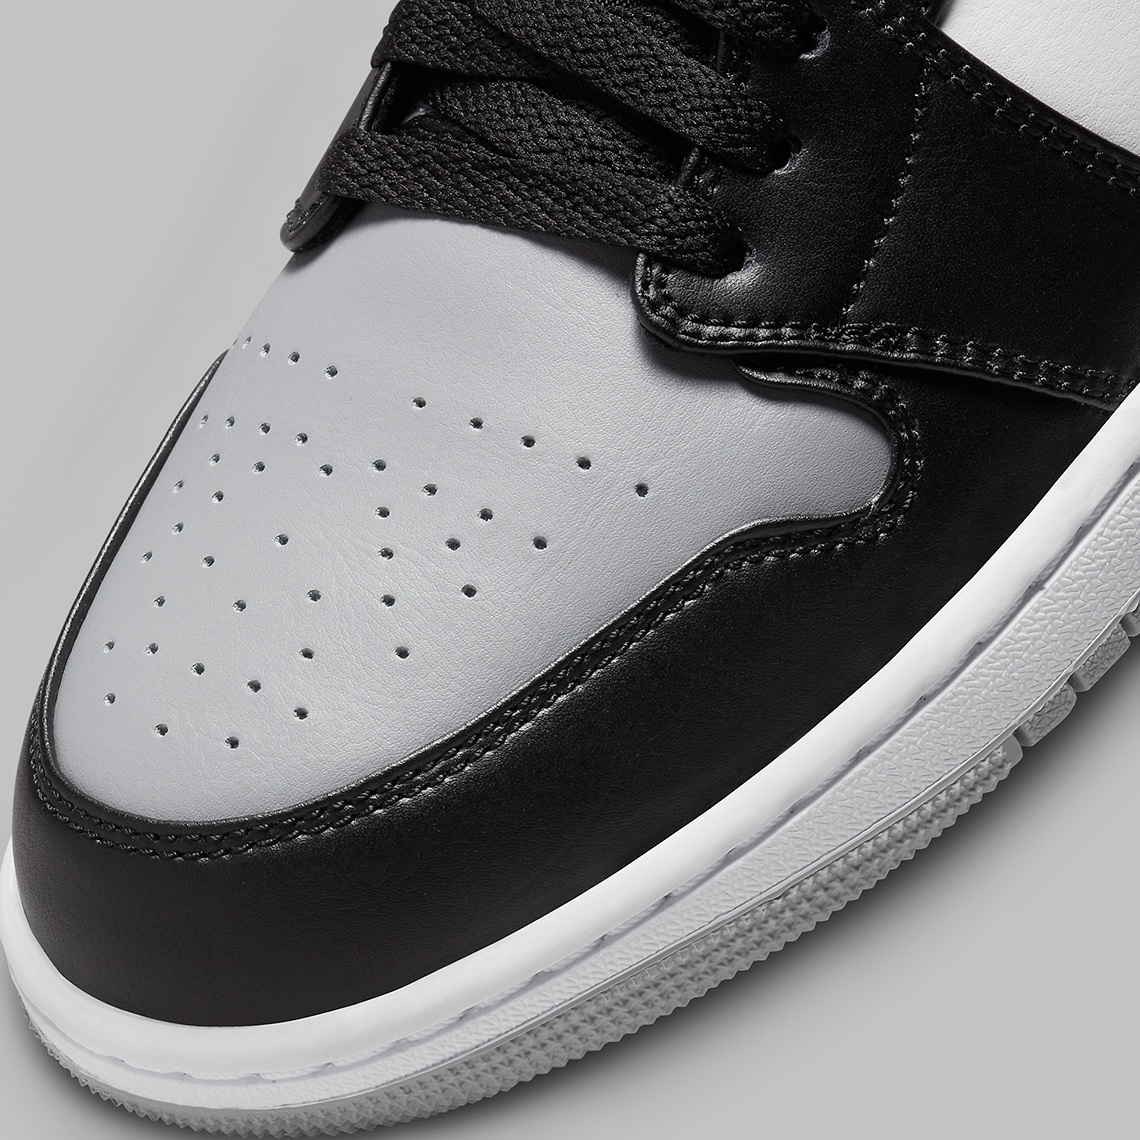 Air Jordan light smoke grey jordan 1 low 1 Low "Smoke Grey Toe" 553558-052 | SneakerNews.com